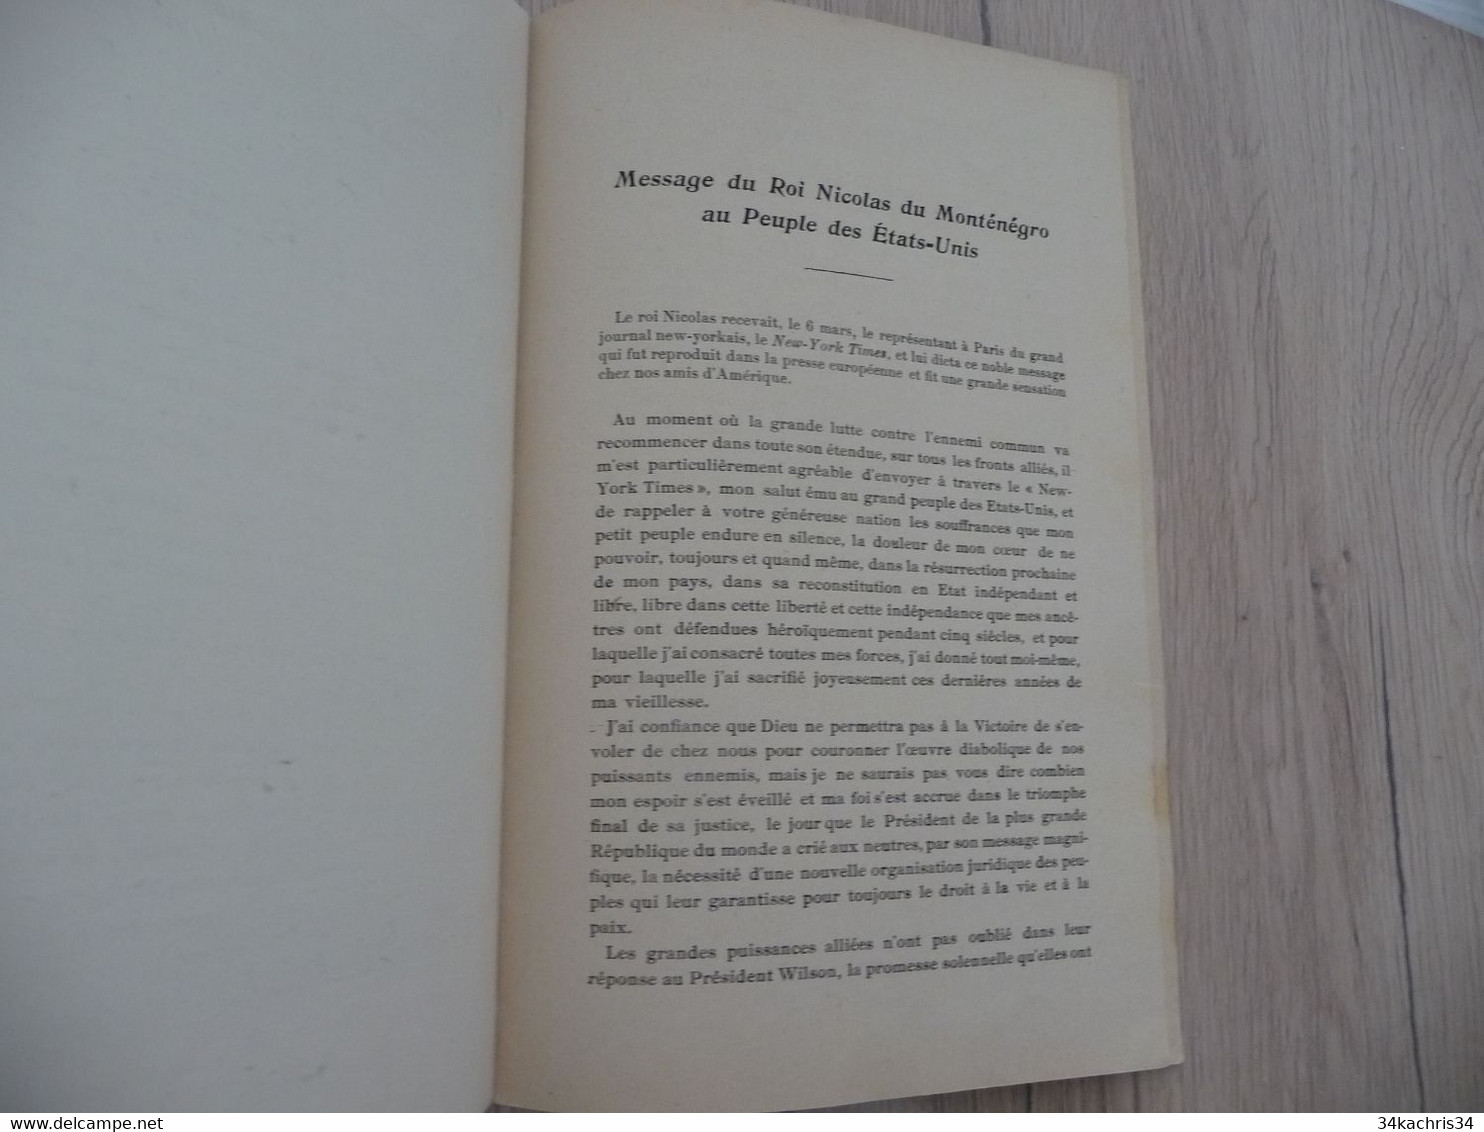 1917 réservée au corps diplomatique + lettre manuscrit explicatif Boggiano Contre une Grande Calomnie pour le Monténégro